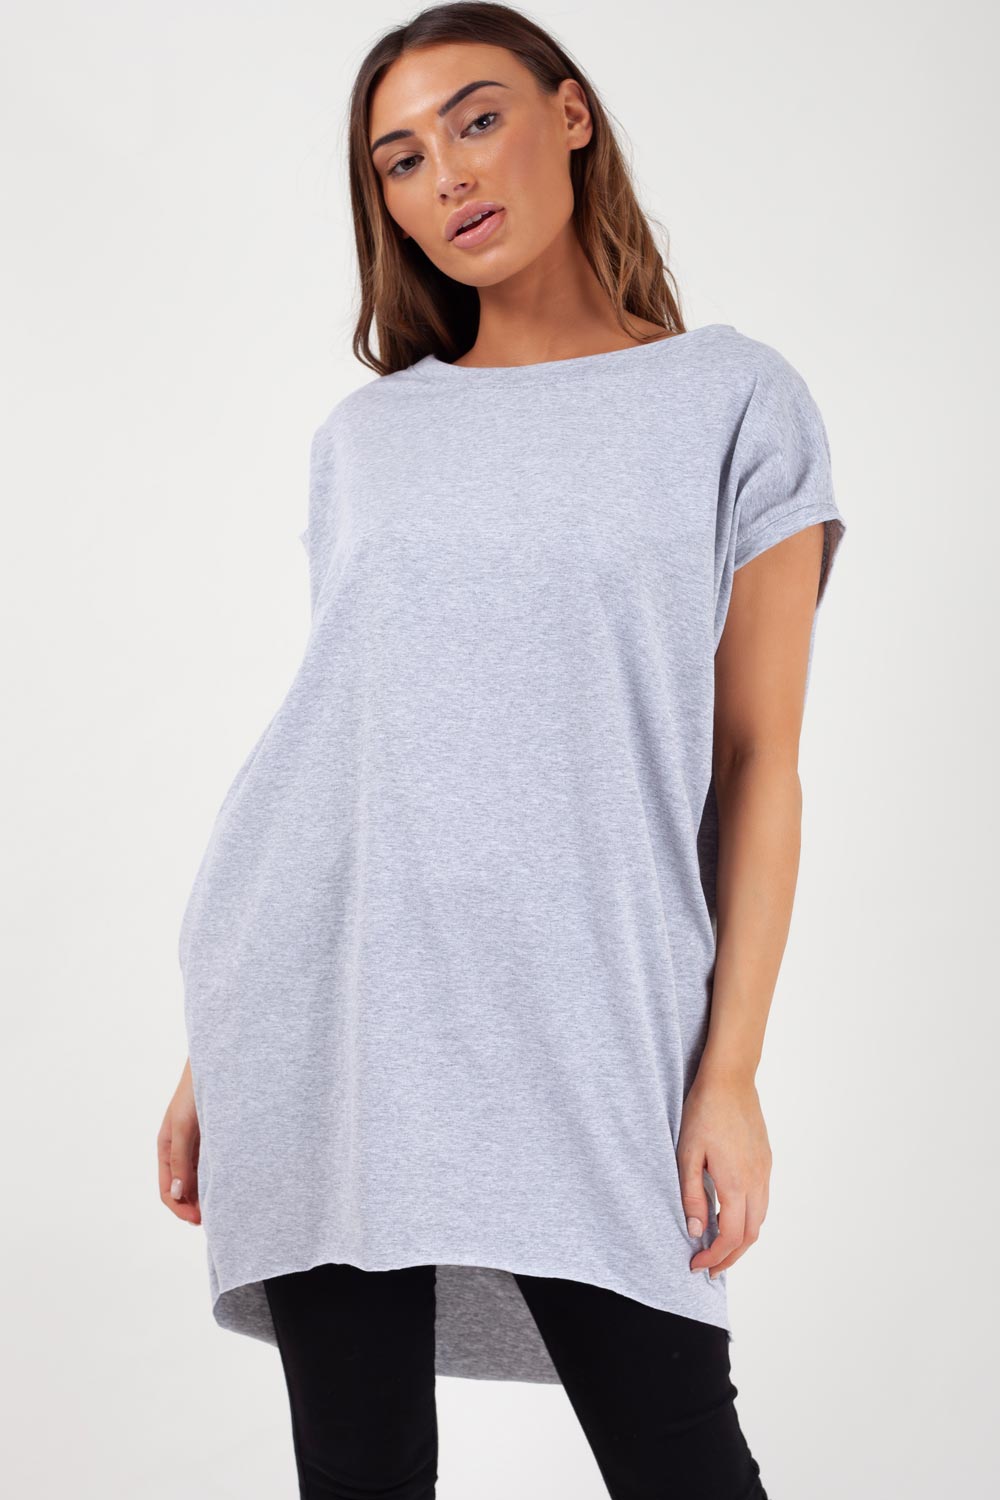 grey oversized t shirt womens styledup fashion 